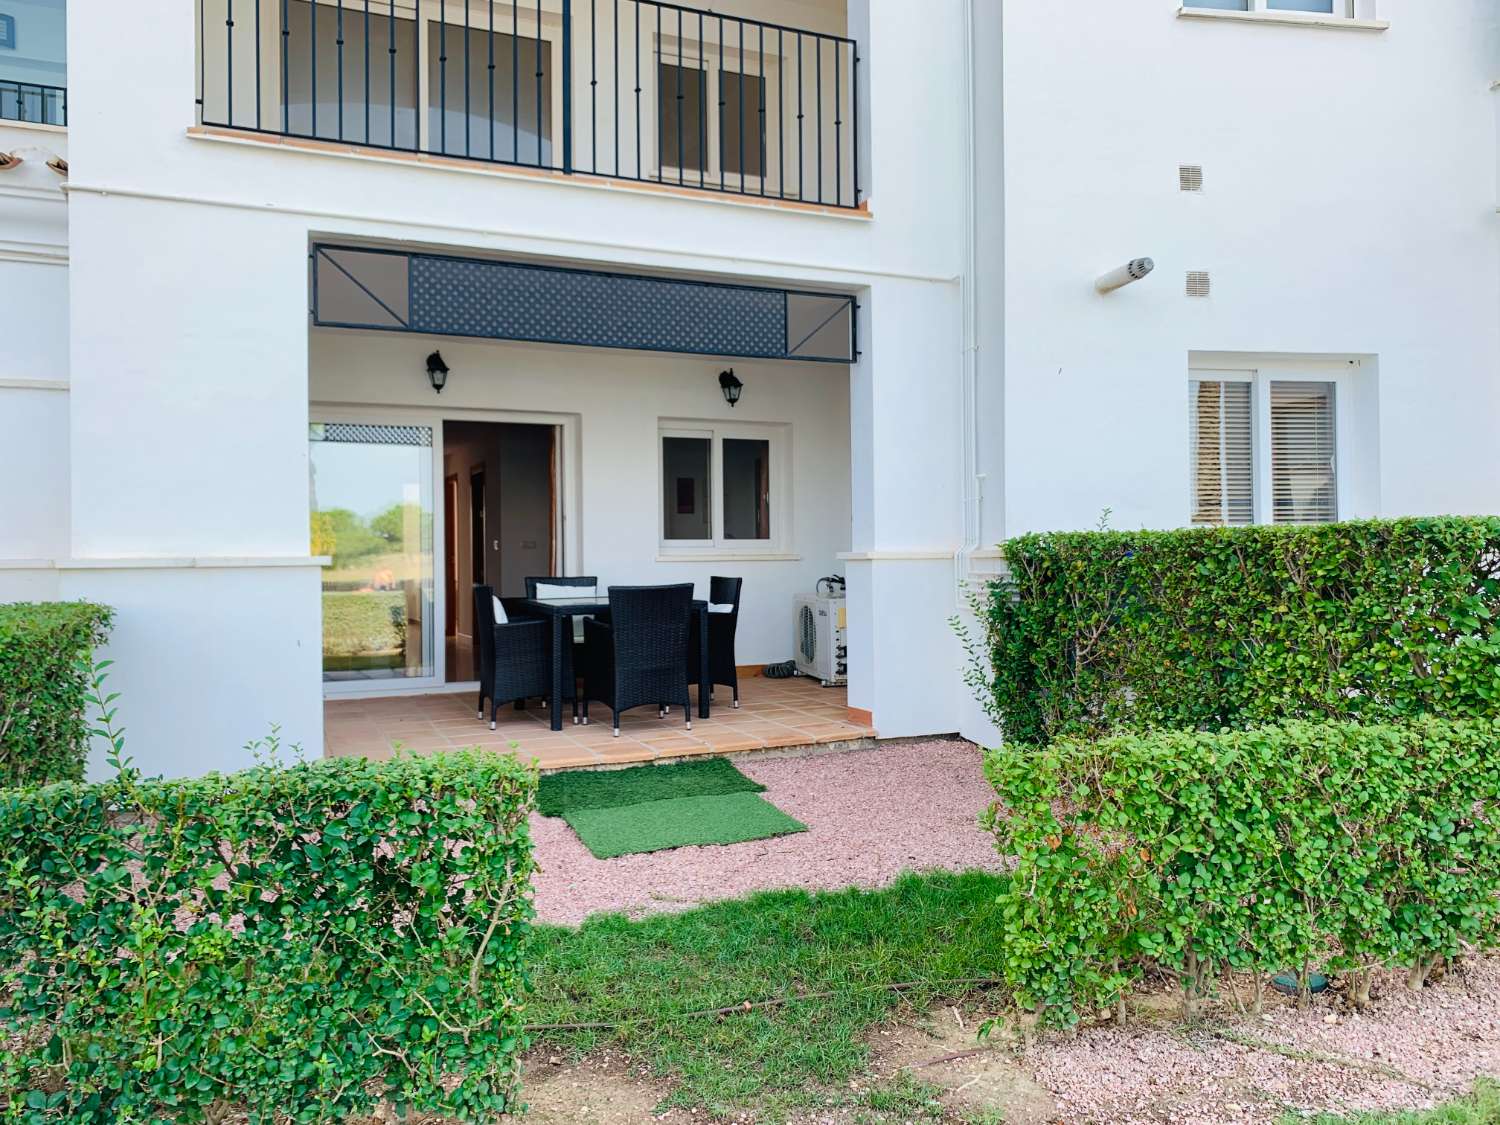 Alquiler de apartamento en Planta Baja para larga temporada en Hacienda Riquelme Golf Resort